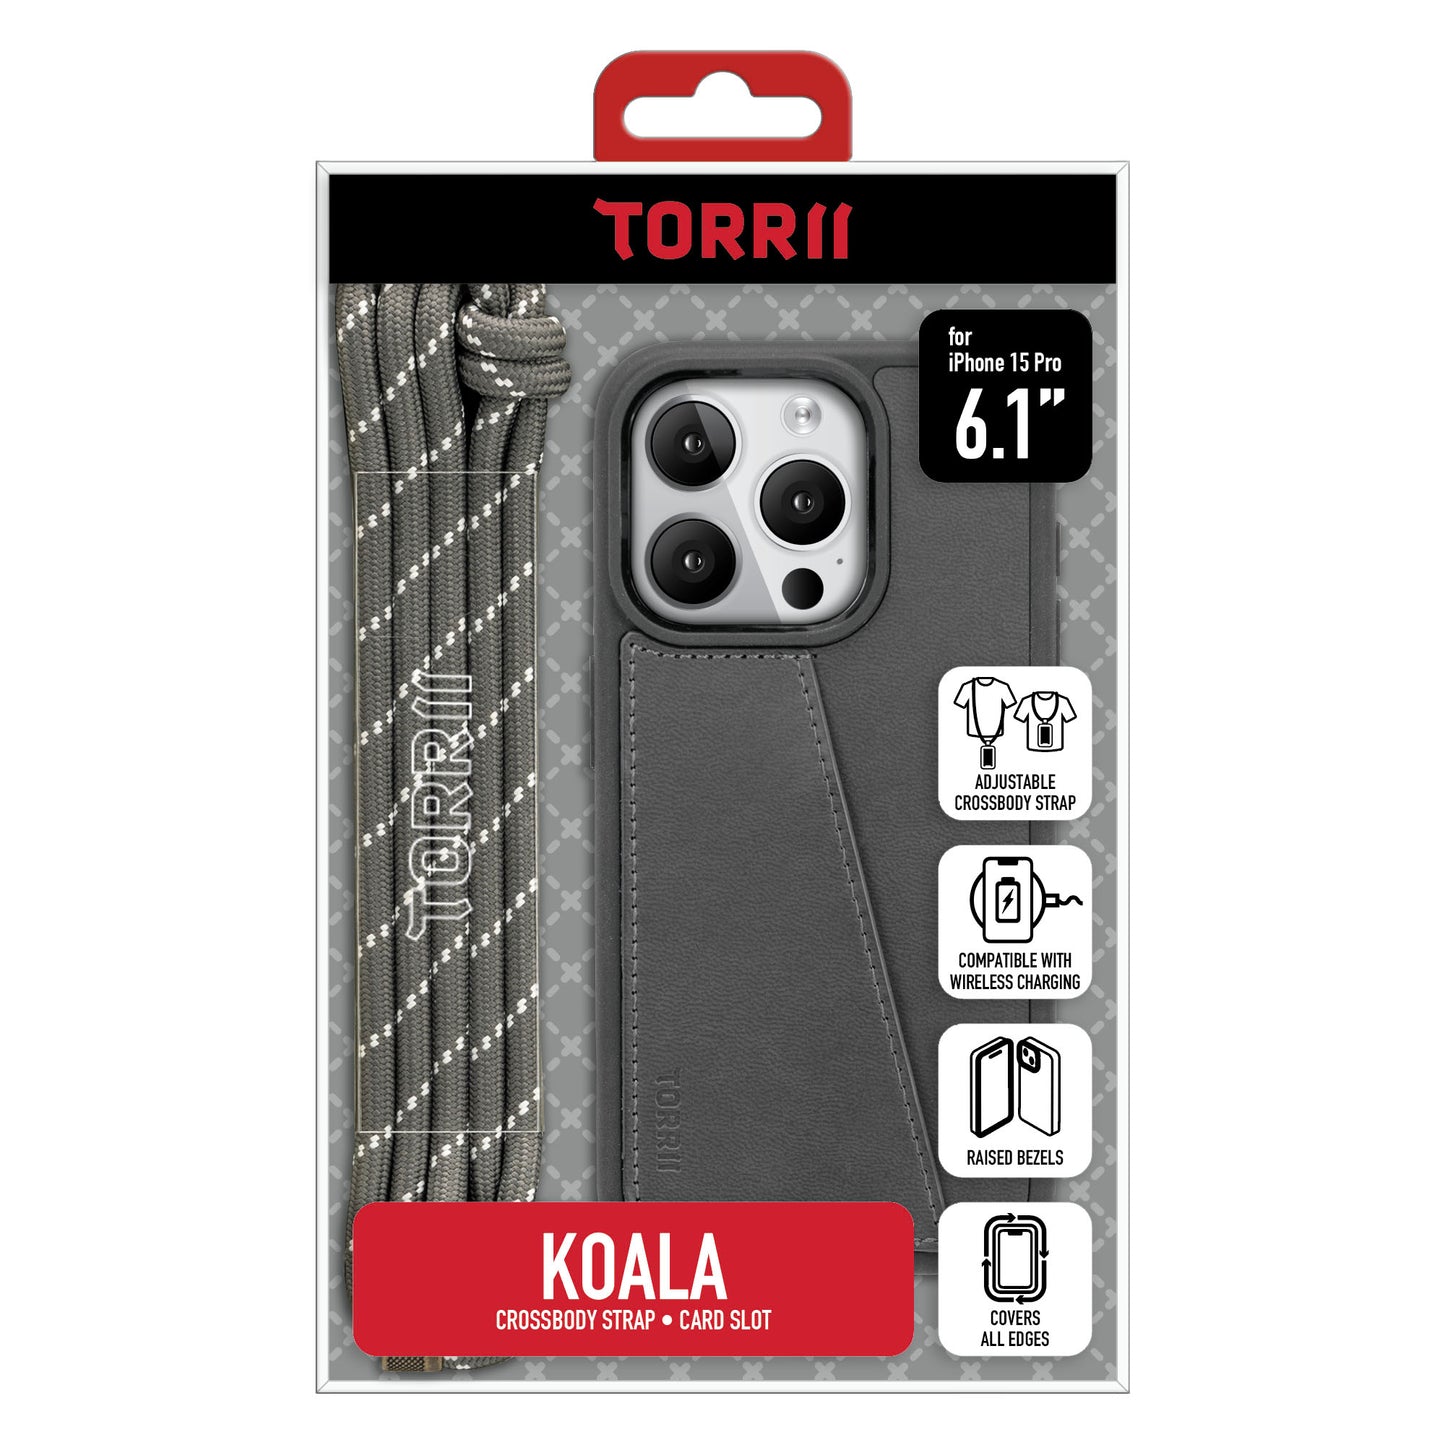 Torrii KOALA 皮革保護套 for iPhone 15 Pro (灰色)